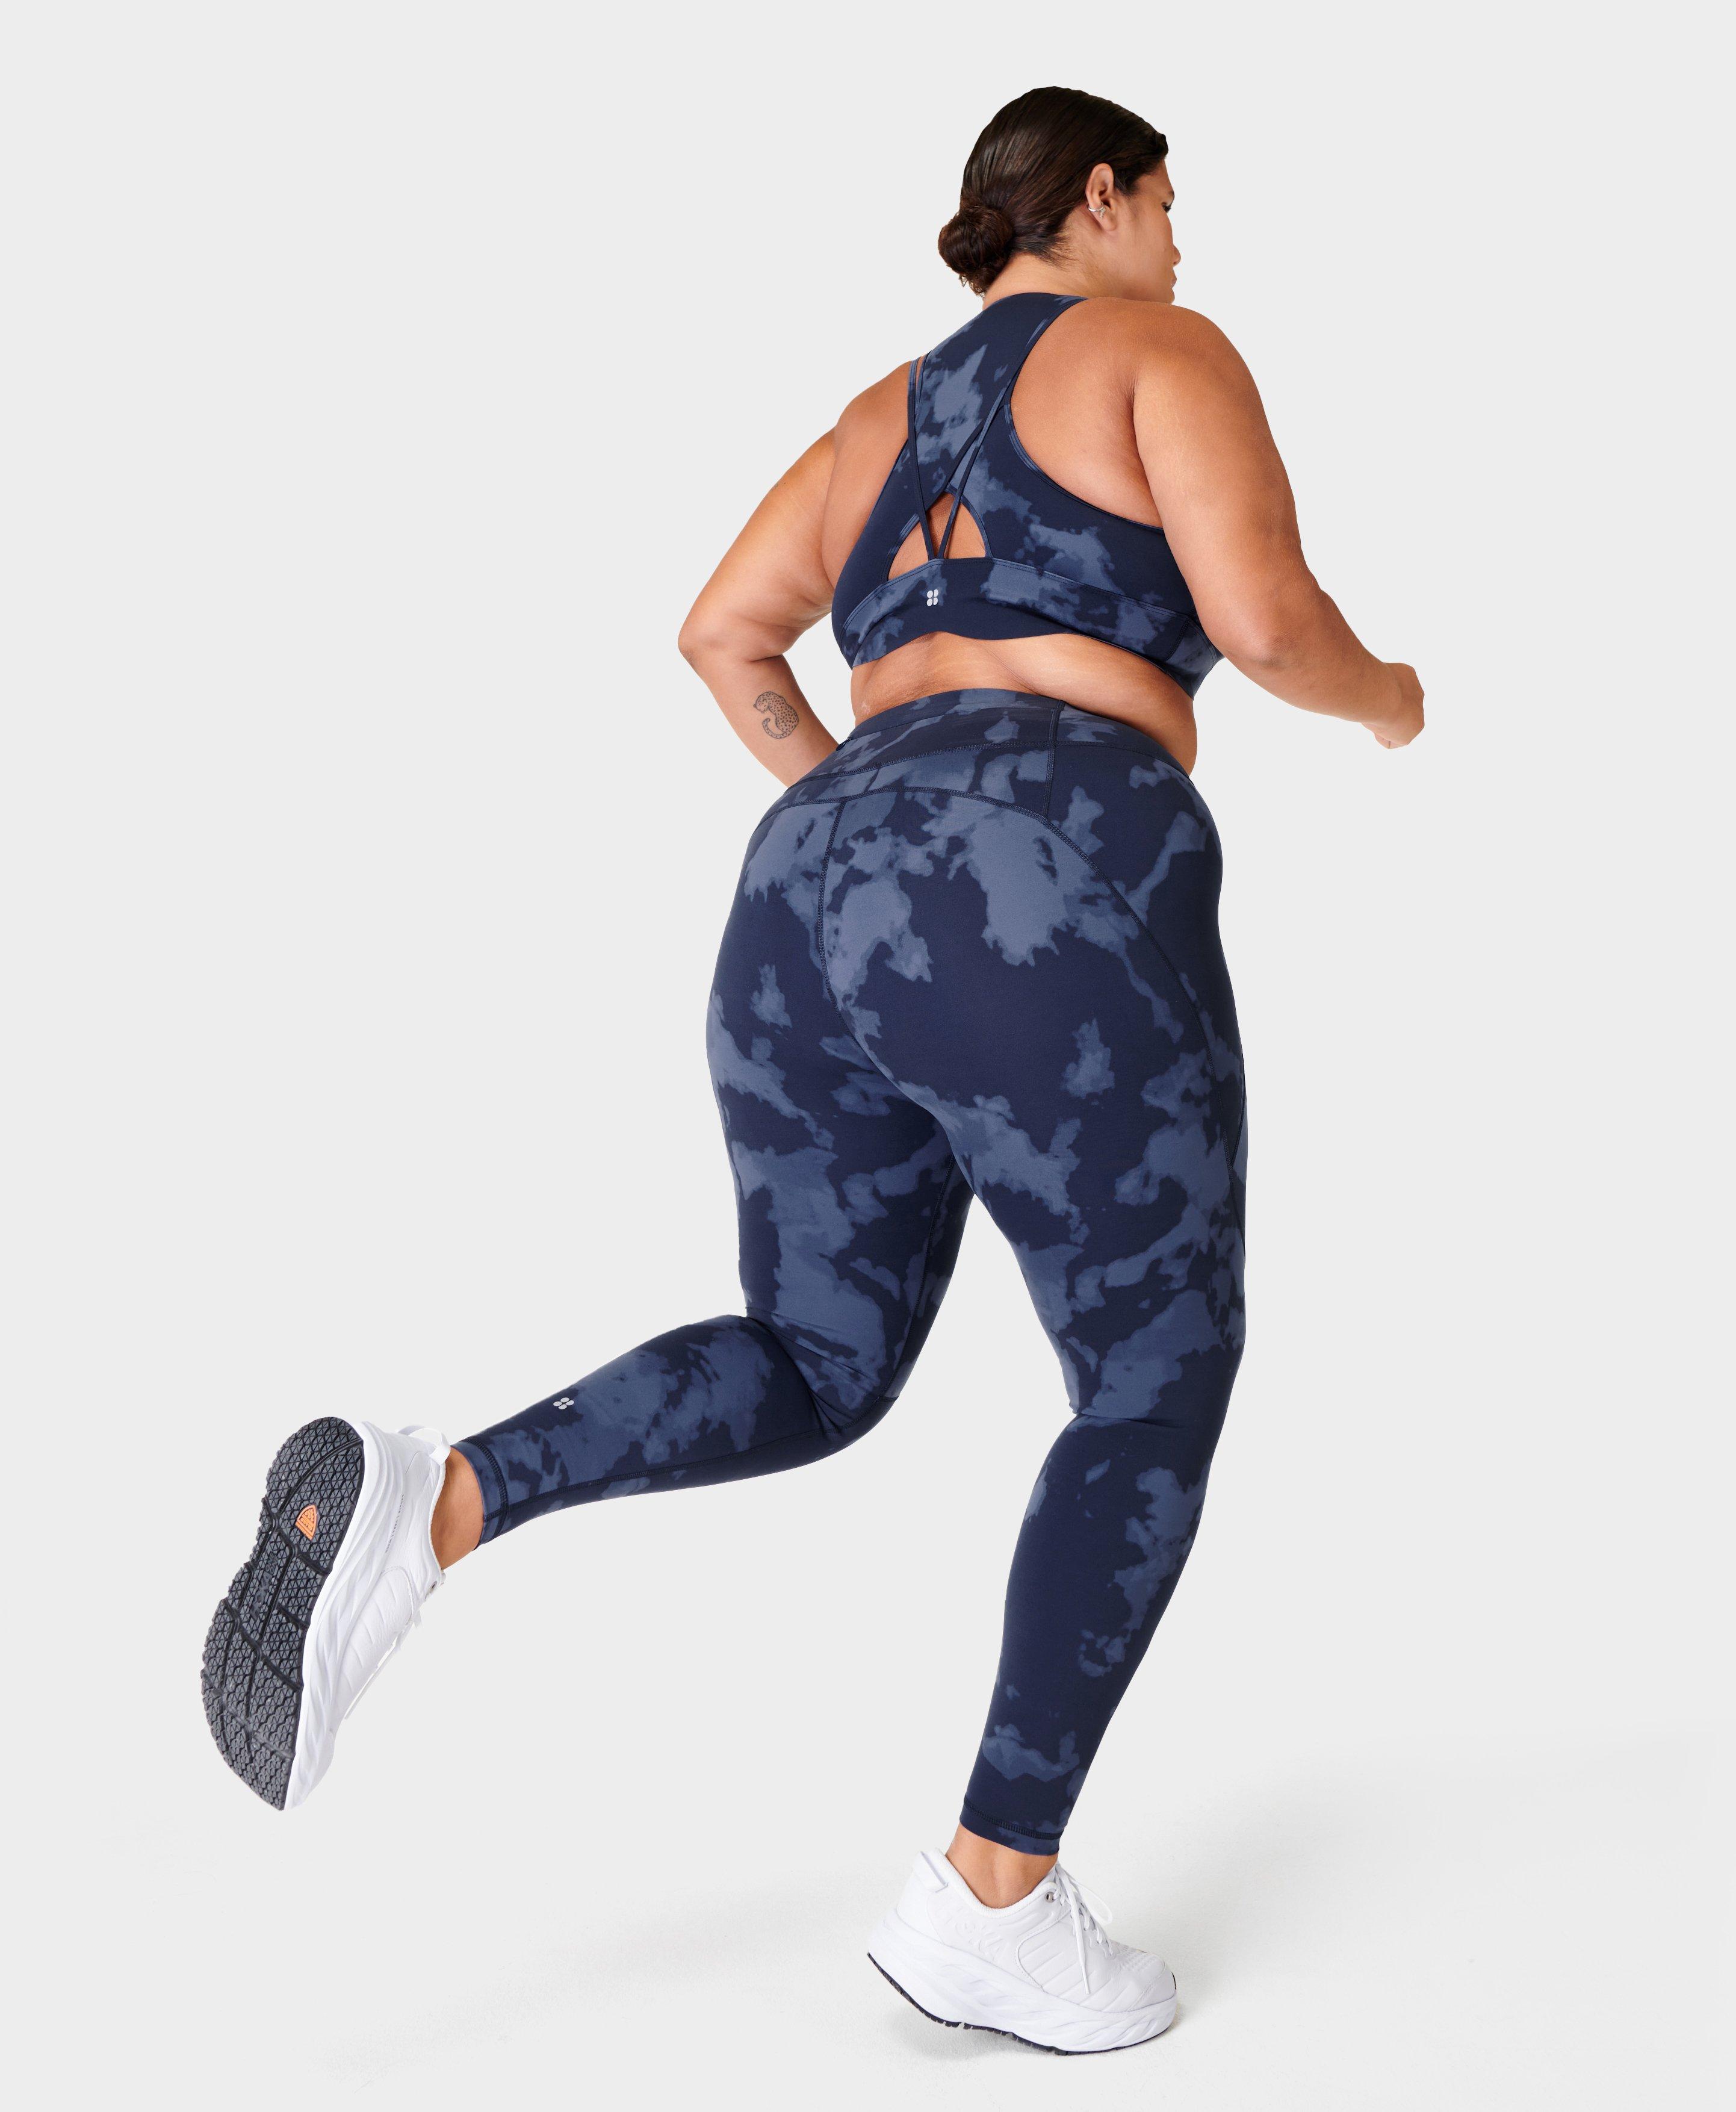 Power Gym Leggings - Blue Fade Print, Women's Leggings